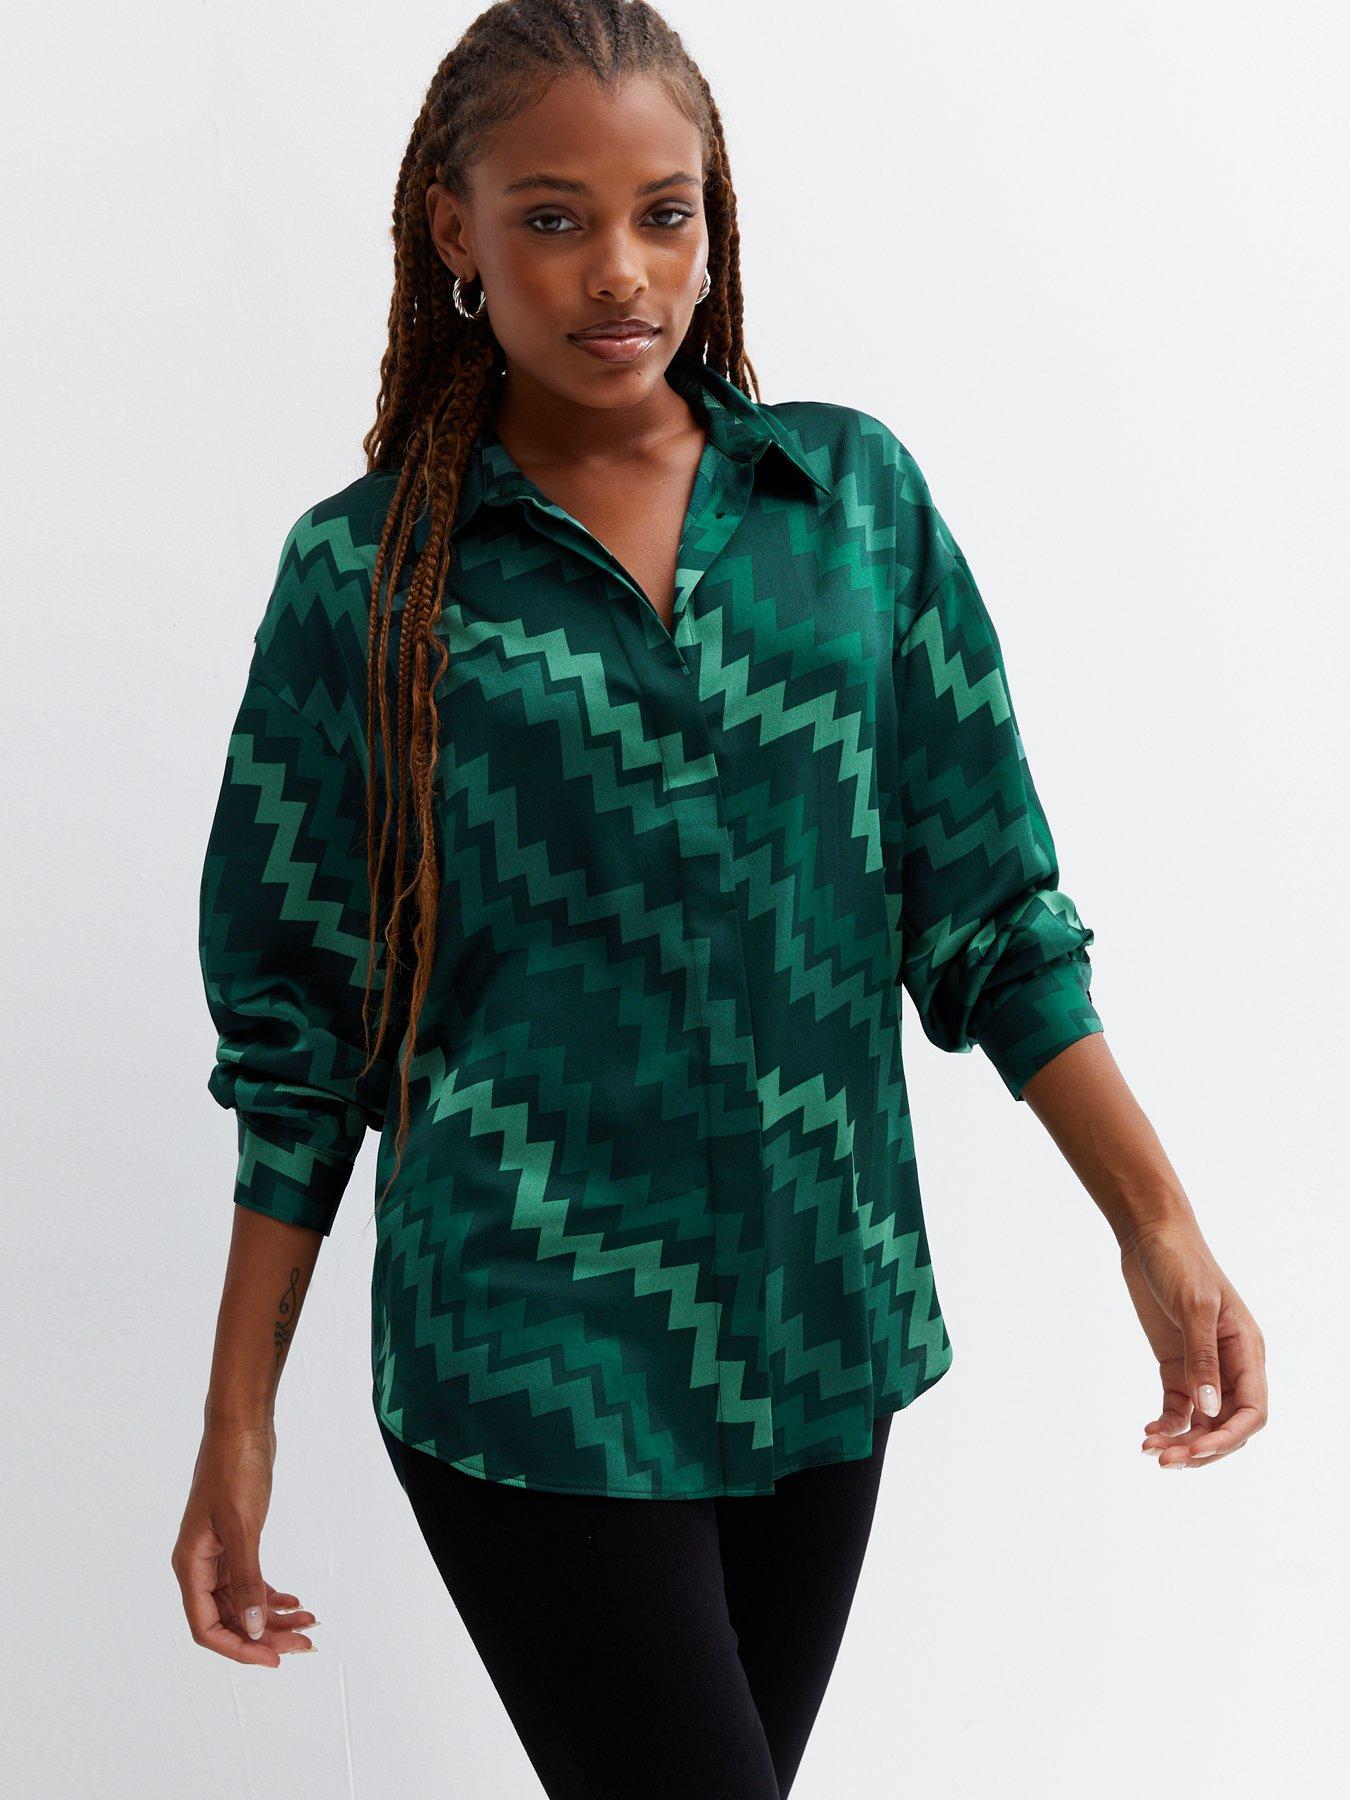 WOMEN FASHION Shirts & T-shirts Casual discount 90% Primark blouse Green 38                  EU 